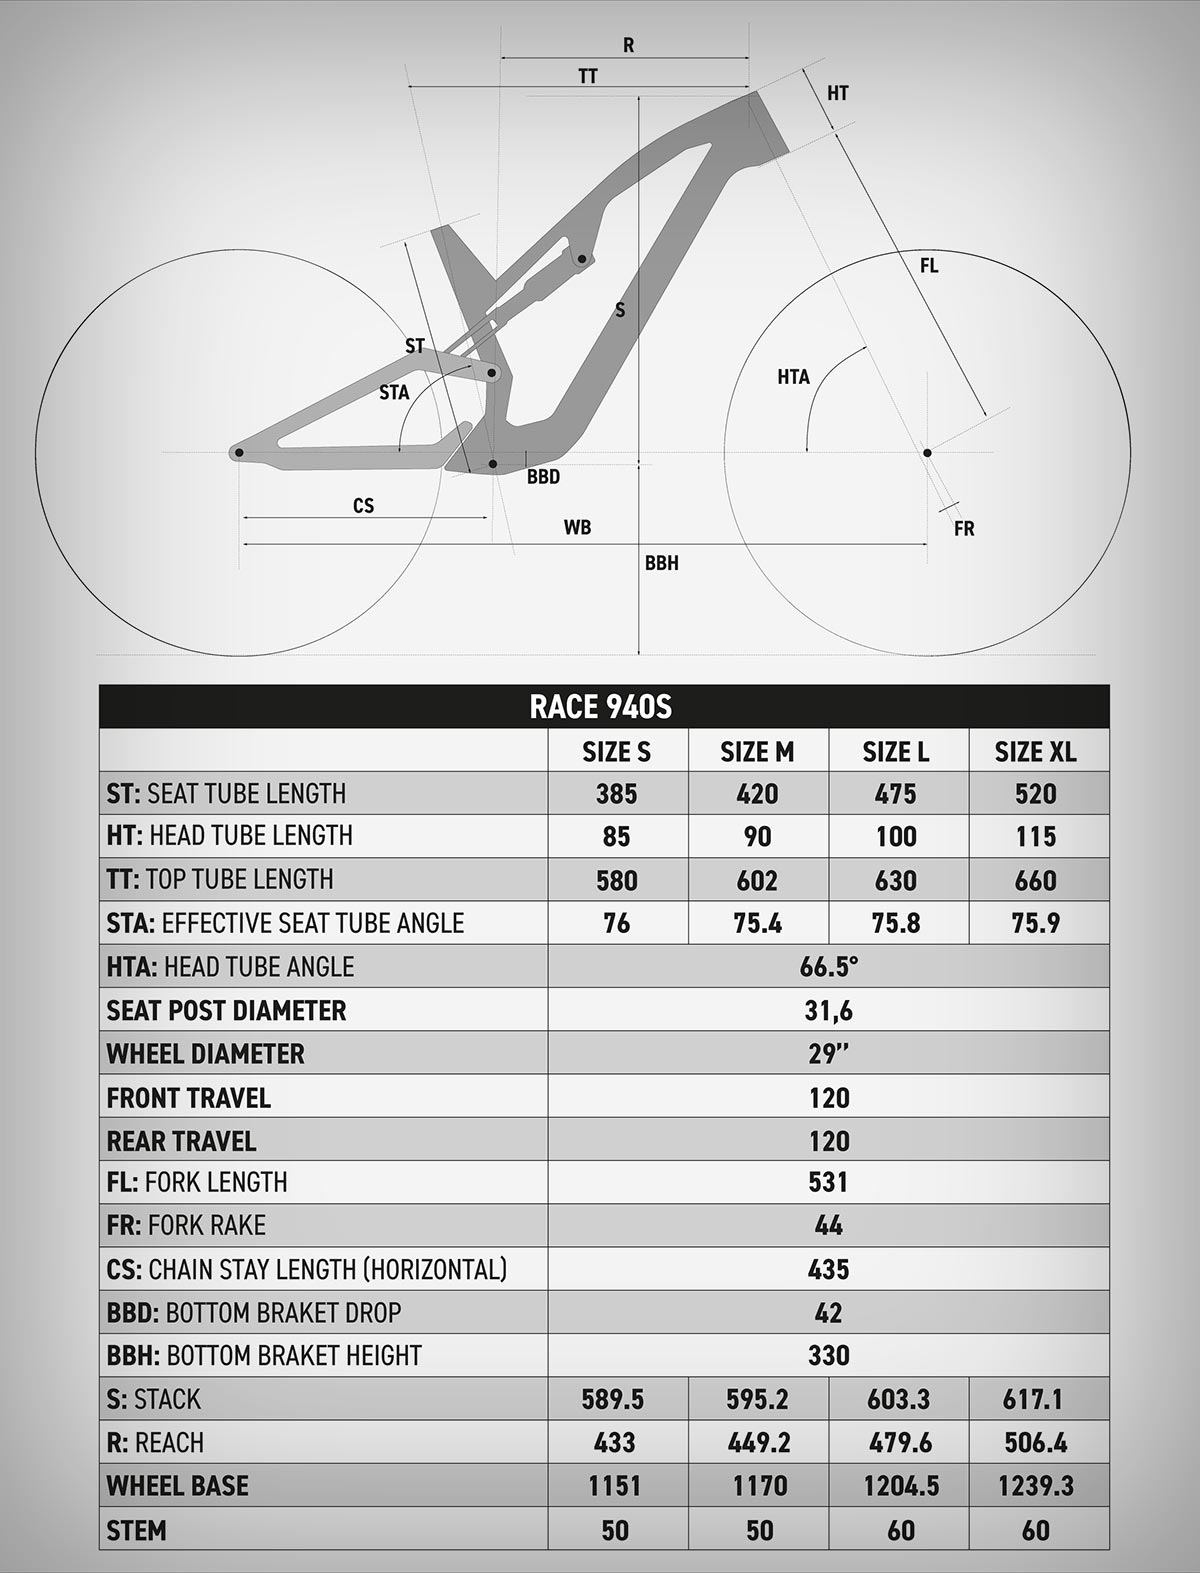 Decathlon presenta la Rockrider Race 940 S, su mejor bicicleta de XC jamás fabricada hasta la fecha